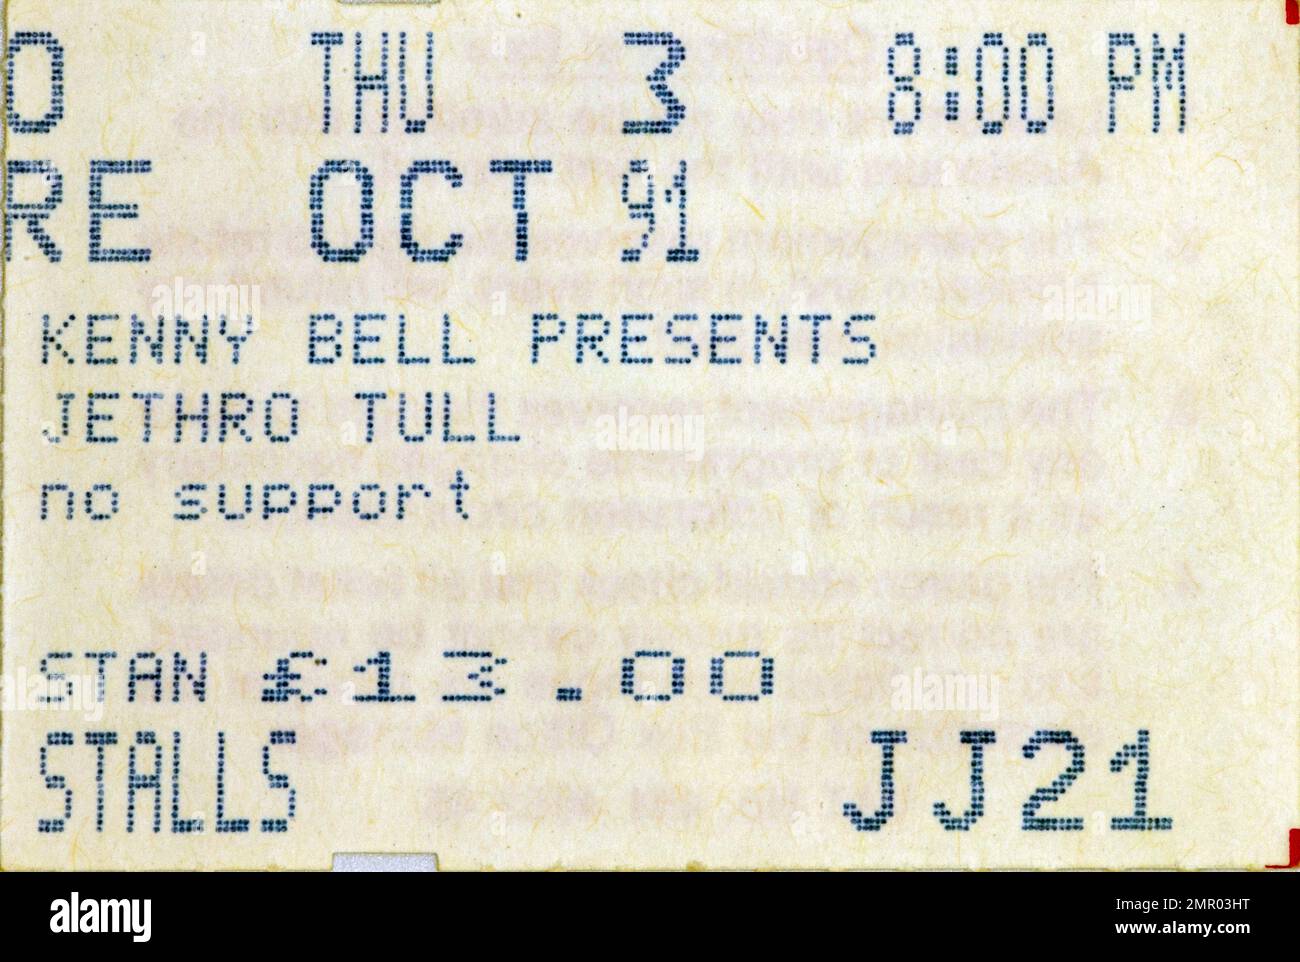 Jethro Tull, 3 ottobre 1991, stub di biglietti per concerti, cimeli di concerti musicali , Manchester, Inghilterra, Regno Unito Foto Stock